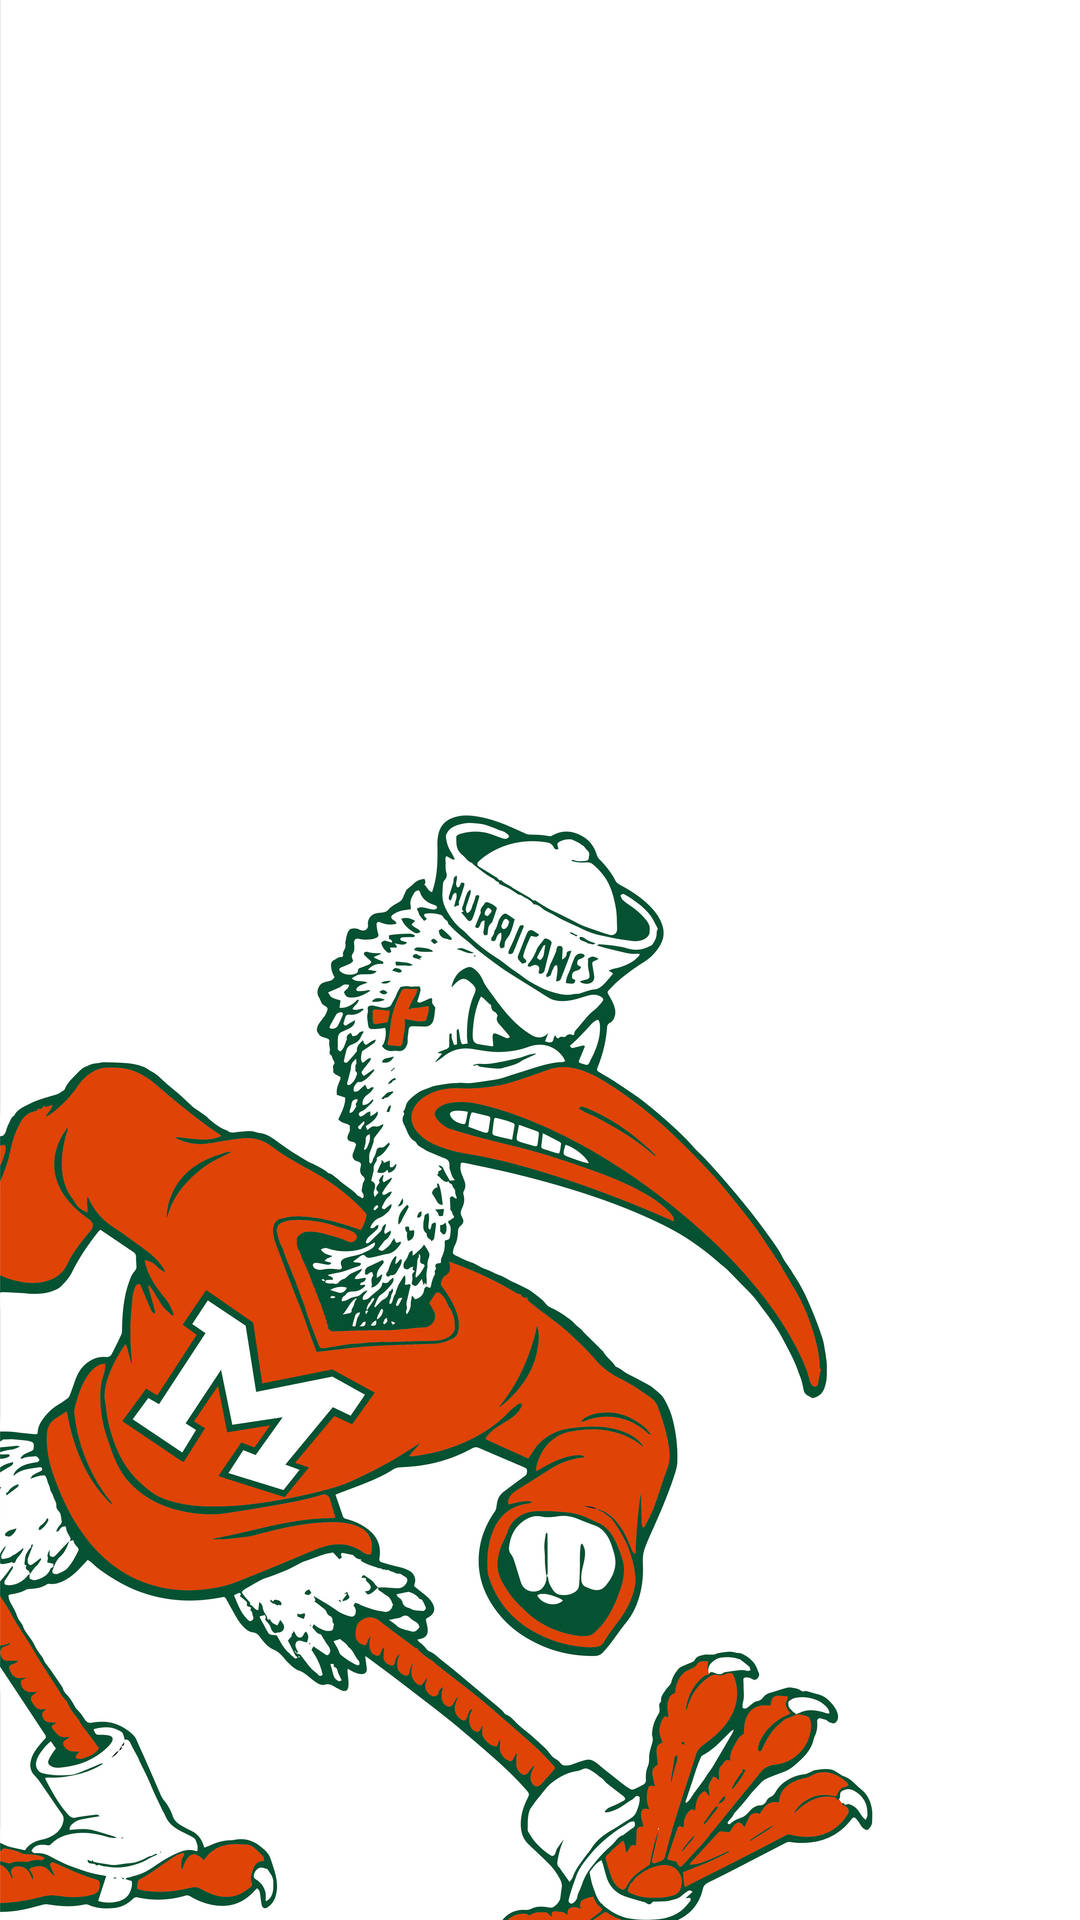 University Of Miami Mascot på hvid baggrund Wallpaper